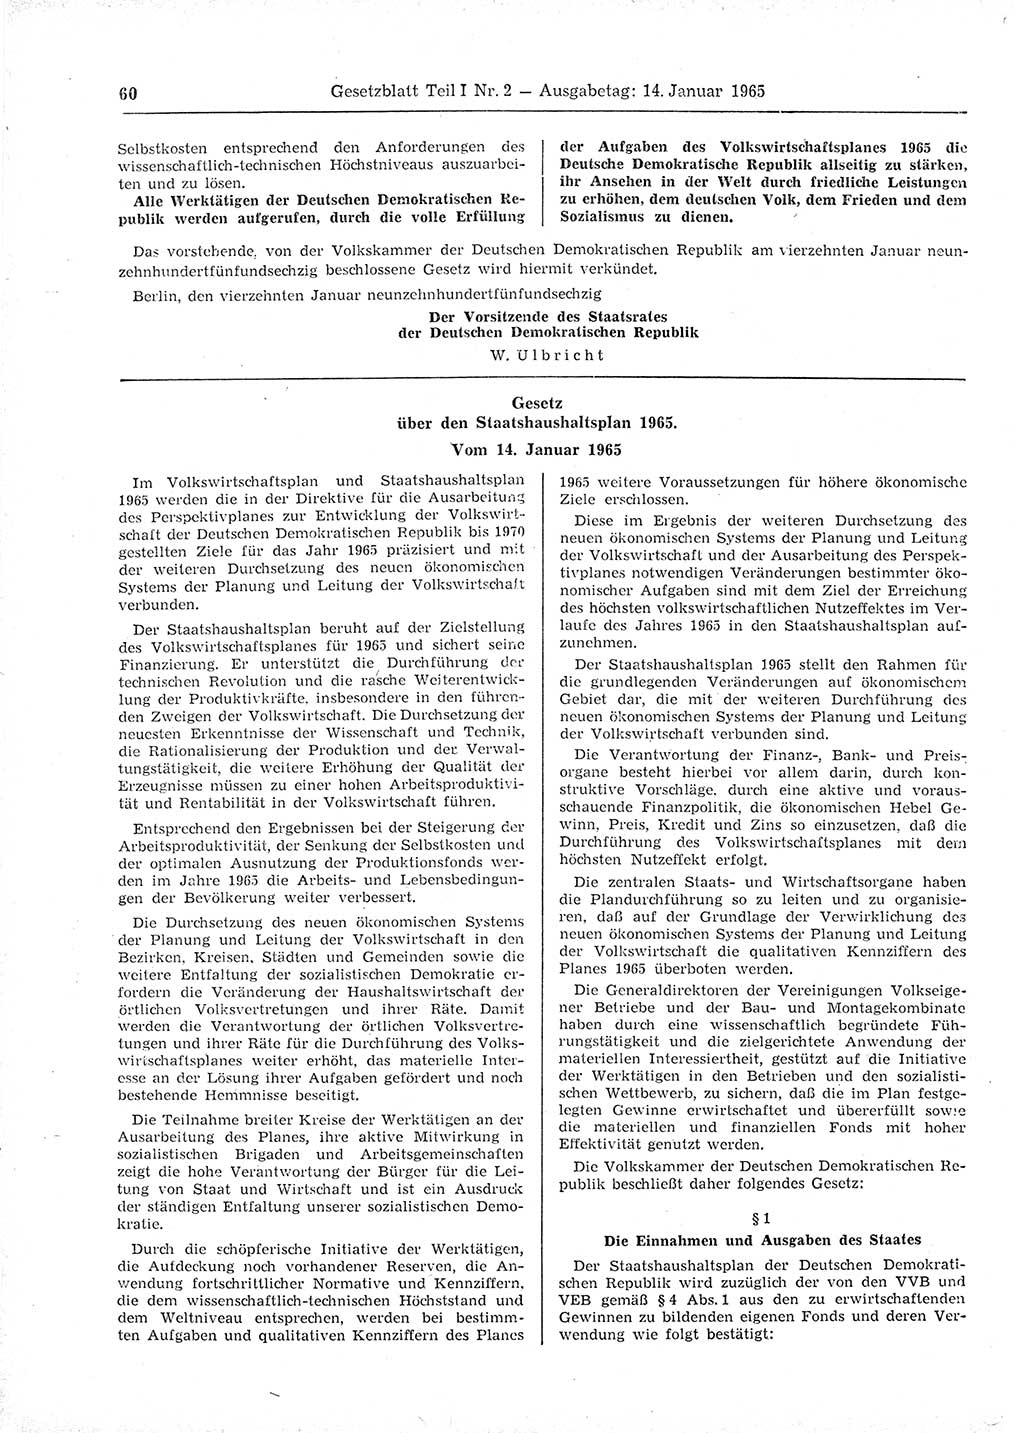 Gesetzblatt (GBl.) der Deutschen Demokratischen Republik (DDR) Teil Ⅰ 1965, Seite 60 (GBl. DDR Ⅰ 1965, S. 60)